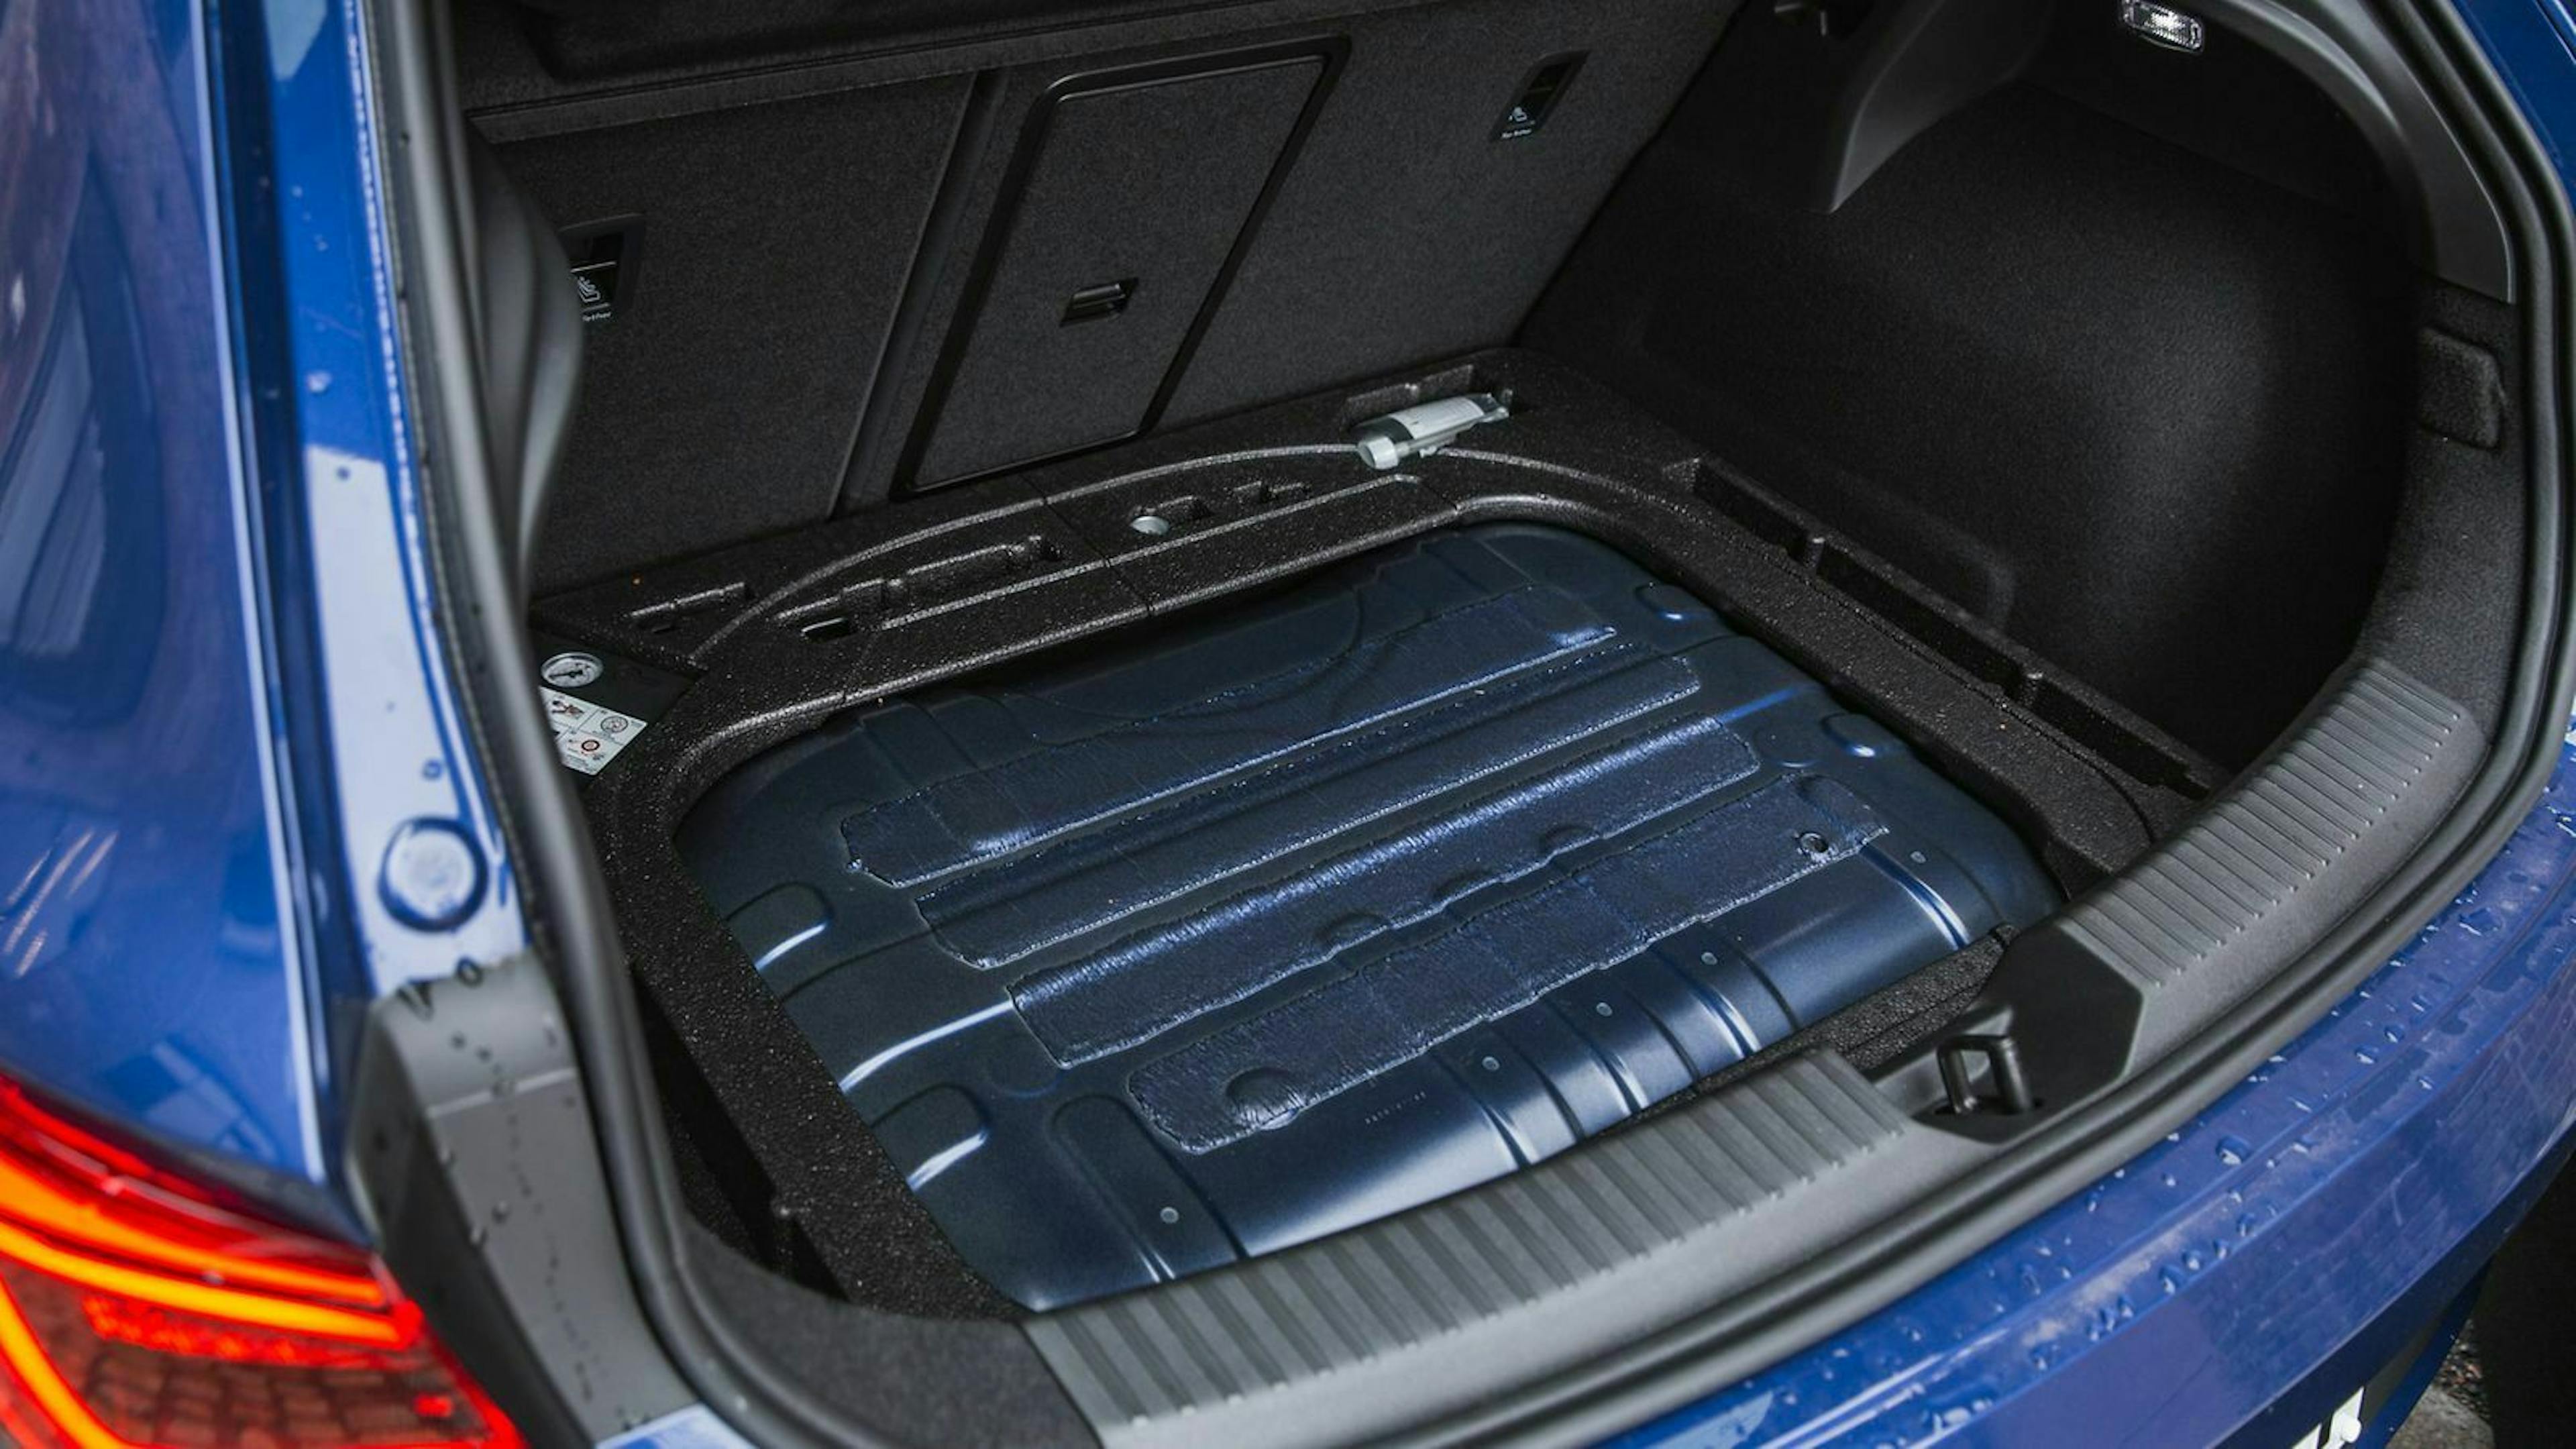 Das Kofferraumvolumen des Seat Leon 1.5 TGI wird durch die Erdgas-Tanks unter dem Kofferraumboden auf 275 Liter reduziert